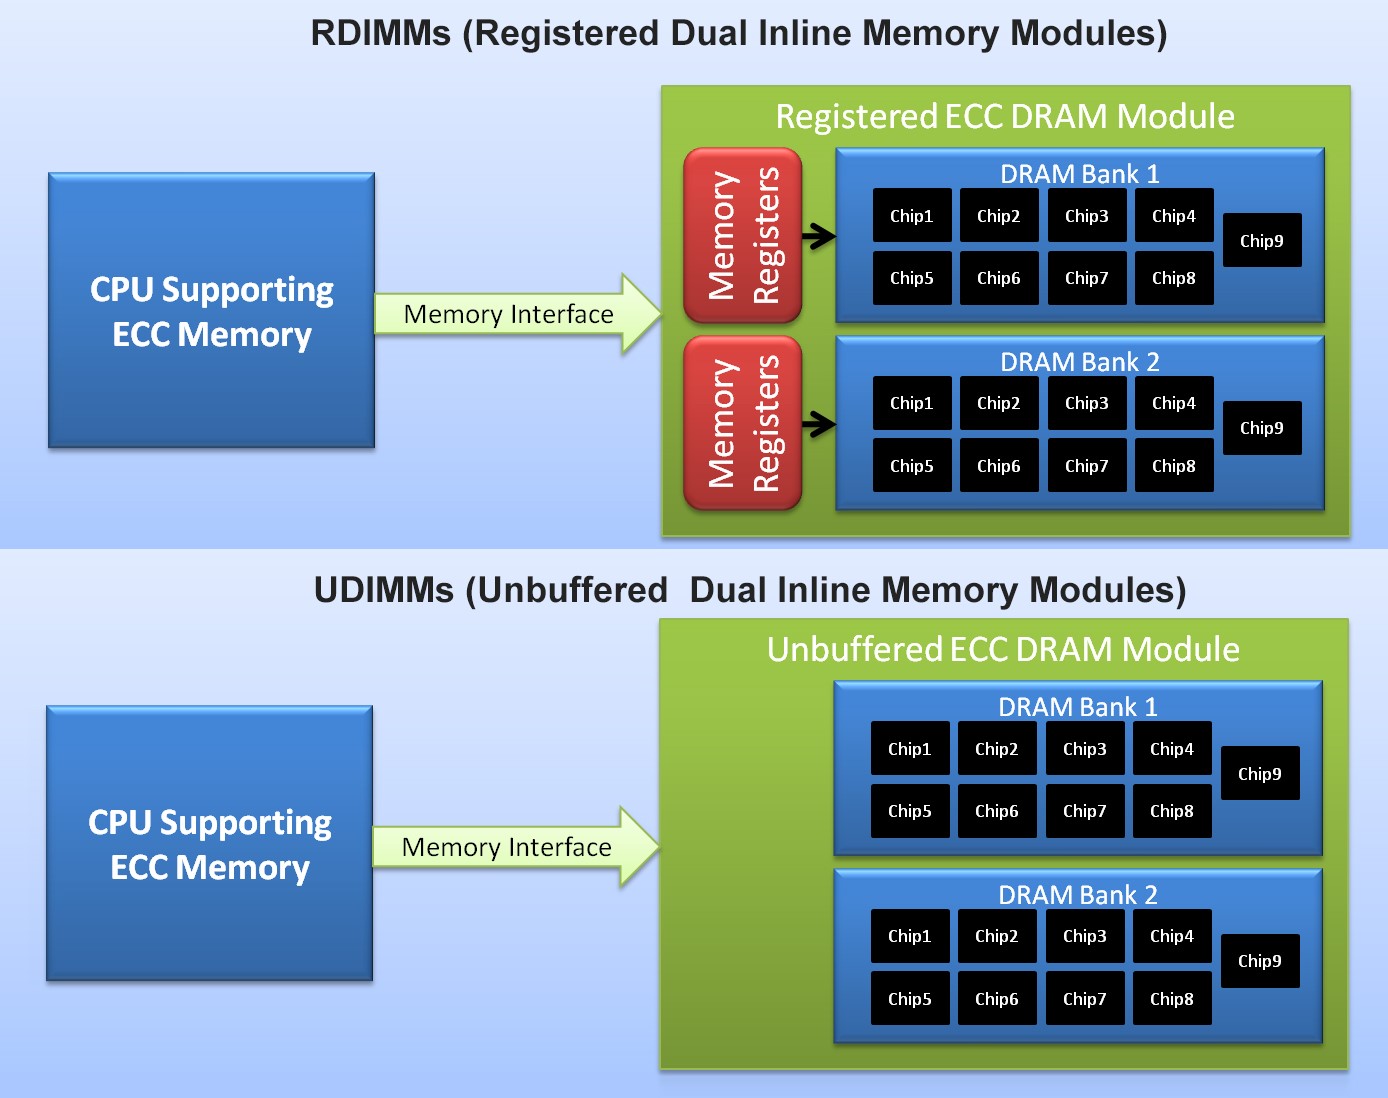 Ram Server là gì? Vì sao cần phải nâng RAM cho máy chủ?